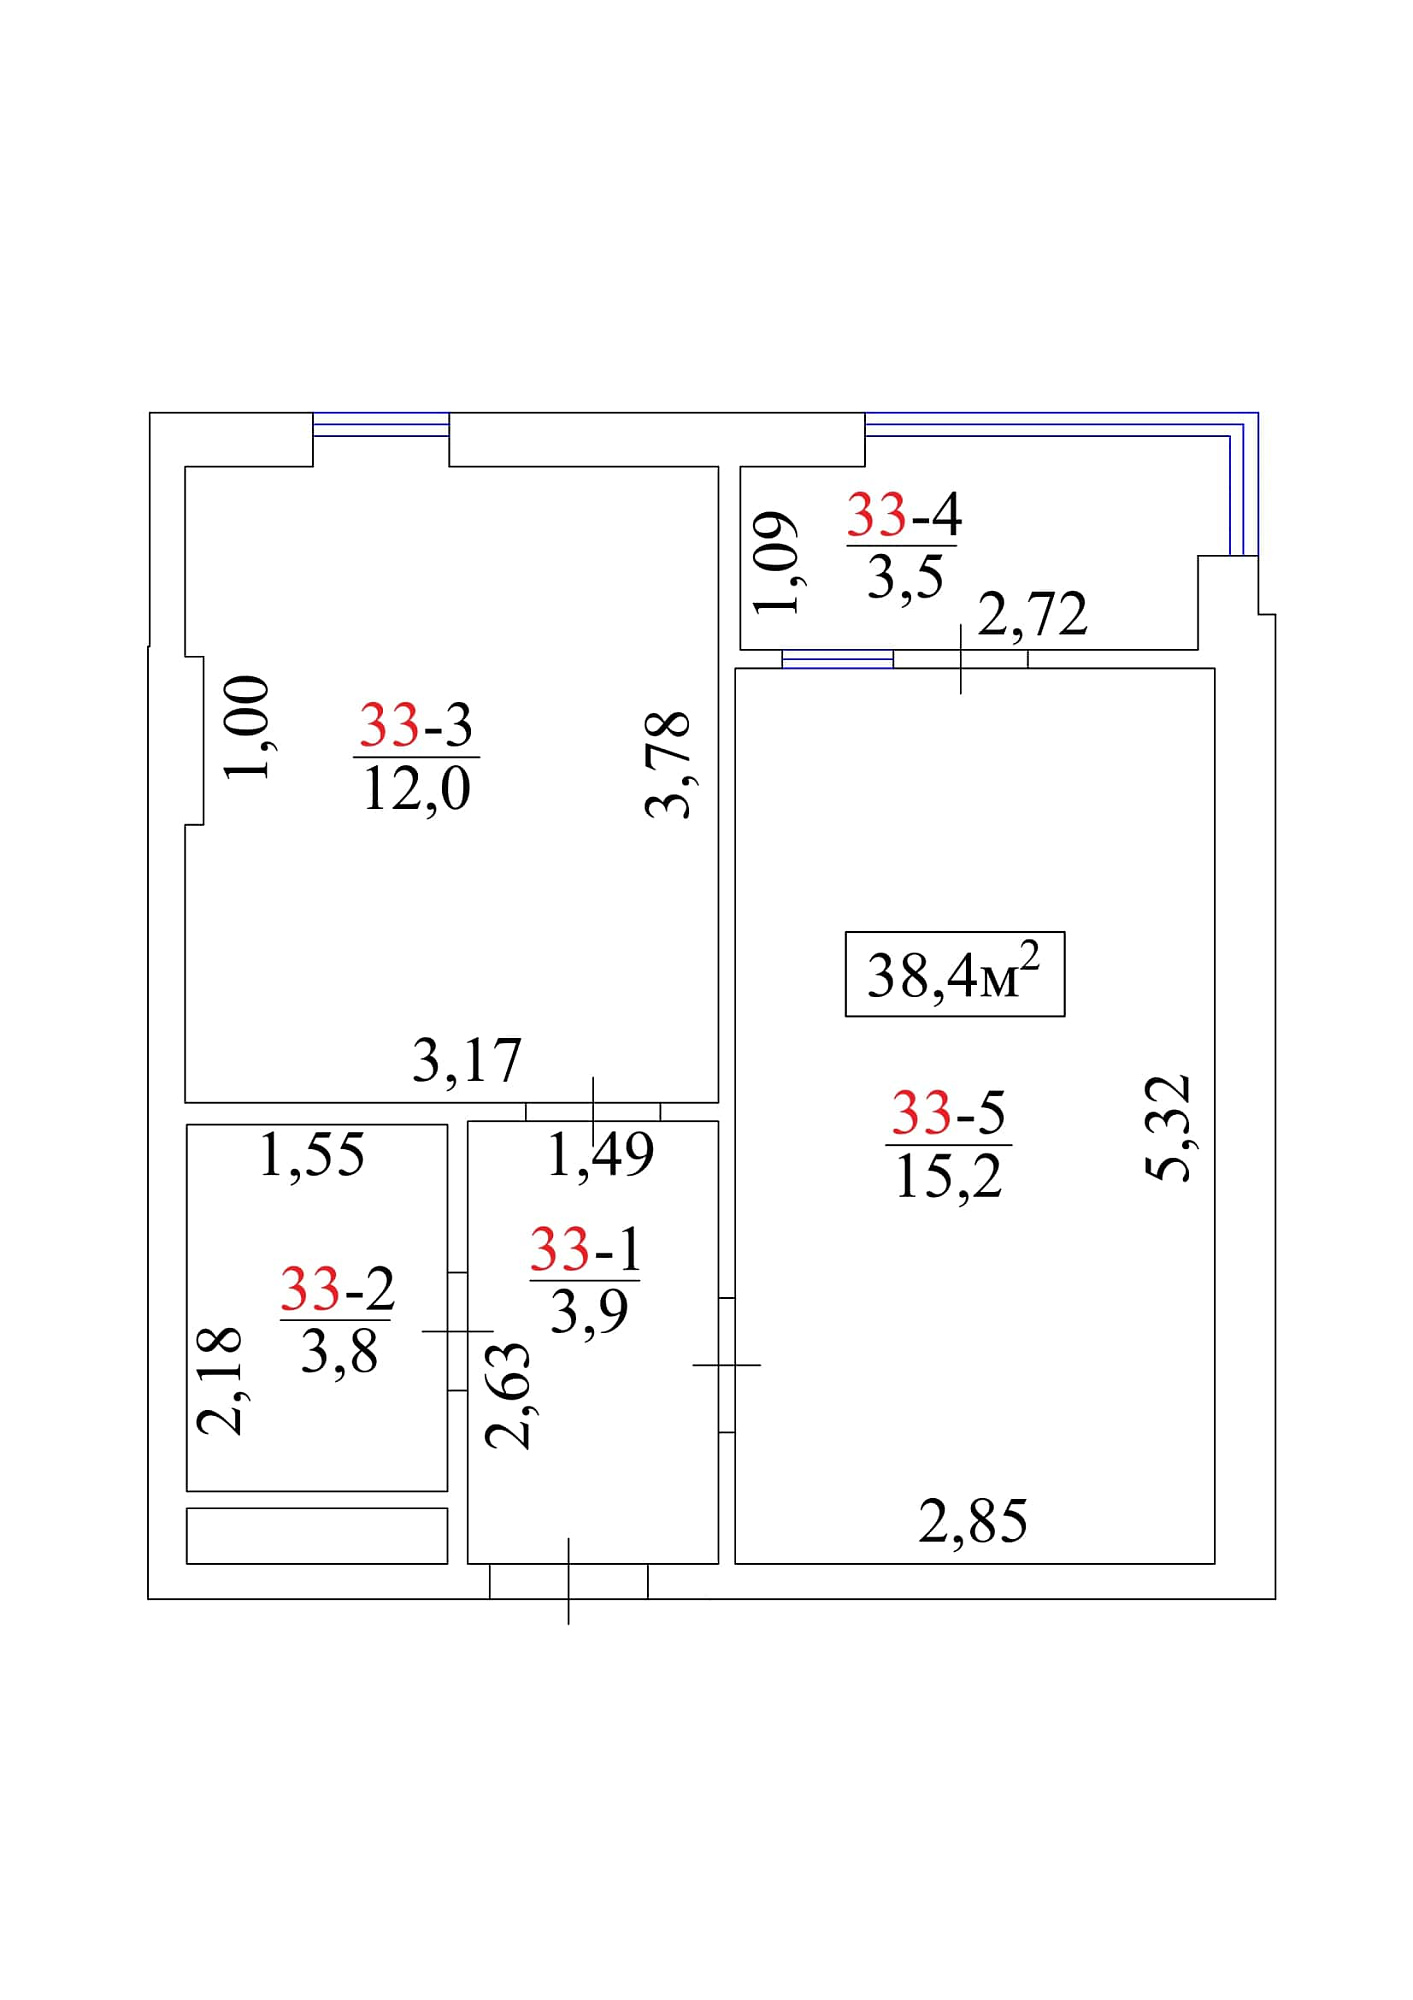 Планировка 1-к квартира площей 38.4м2, AB-01-04/0033а.